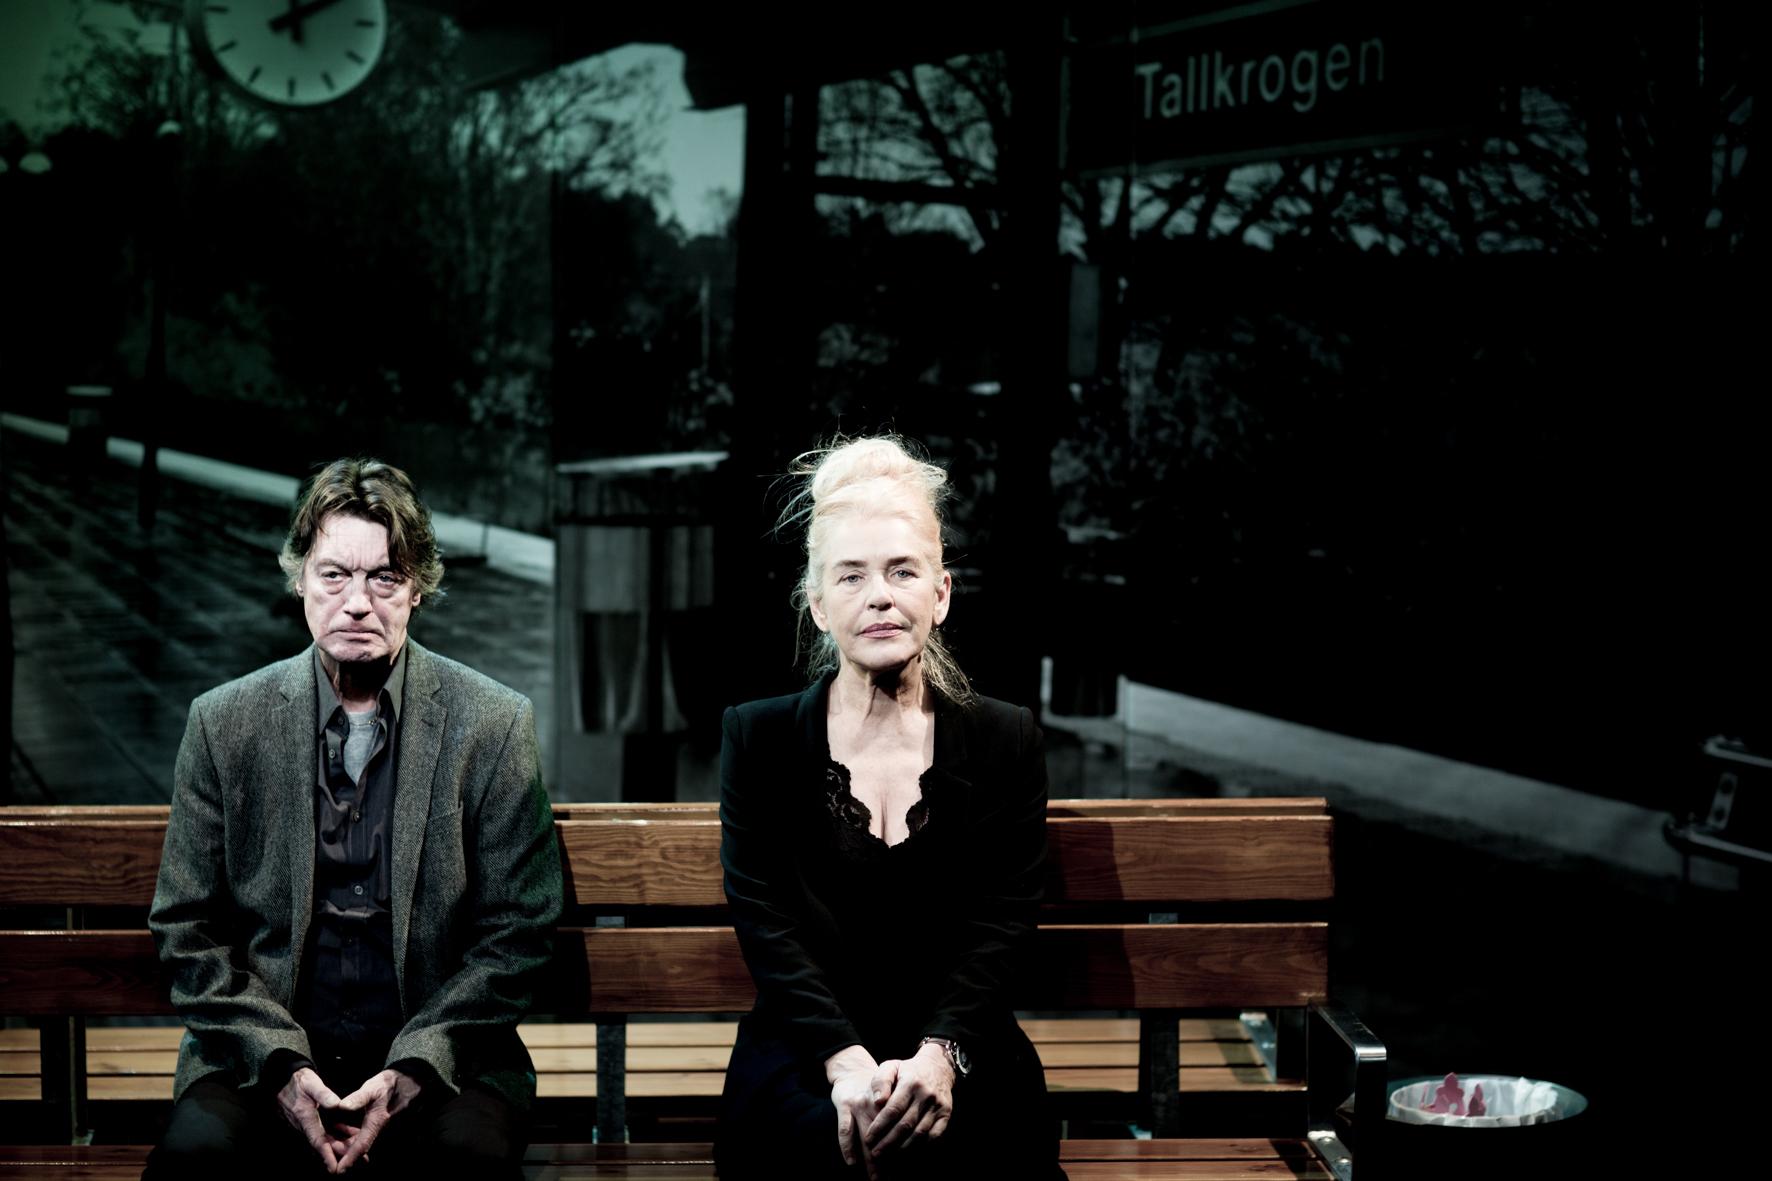 Johannes Brost och Ewa Fröling spelar ett grälande par på Tallkrogens tunnelbanestation där tiden står still. Foto: Elisabet Sverlander